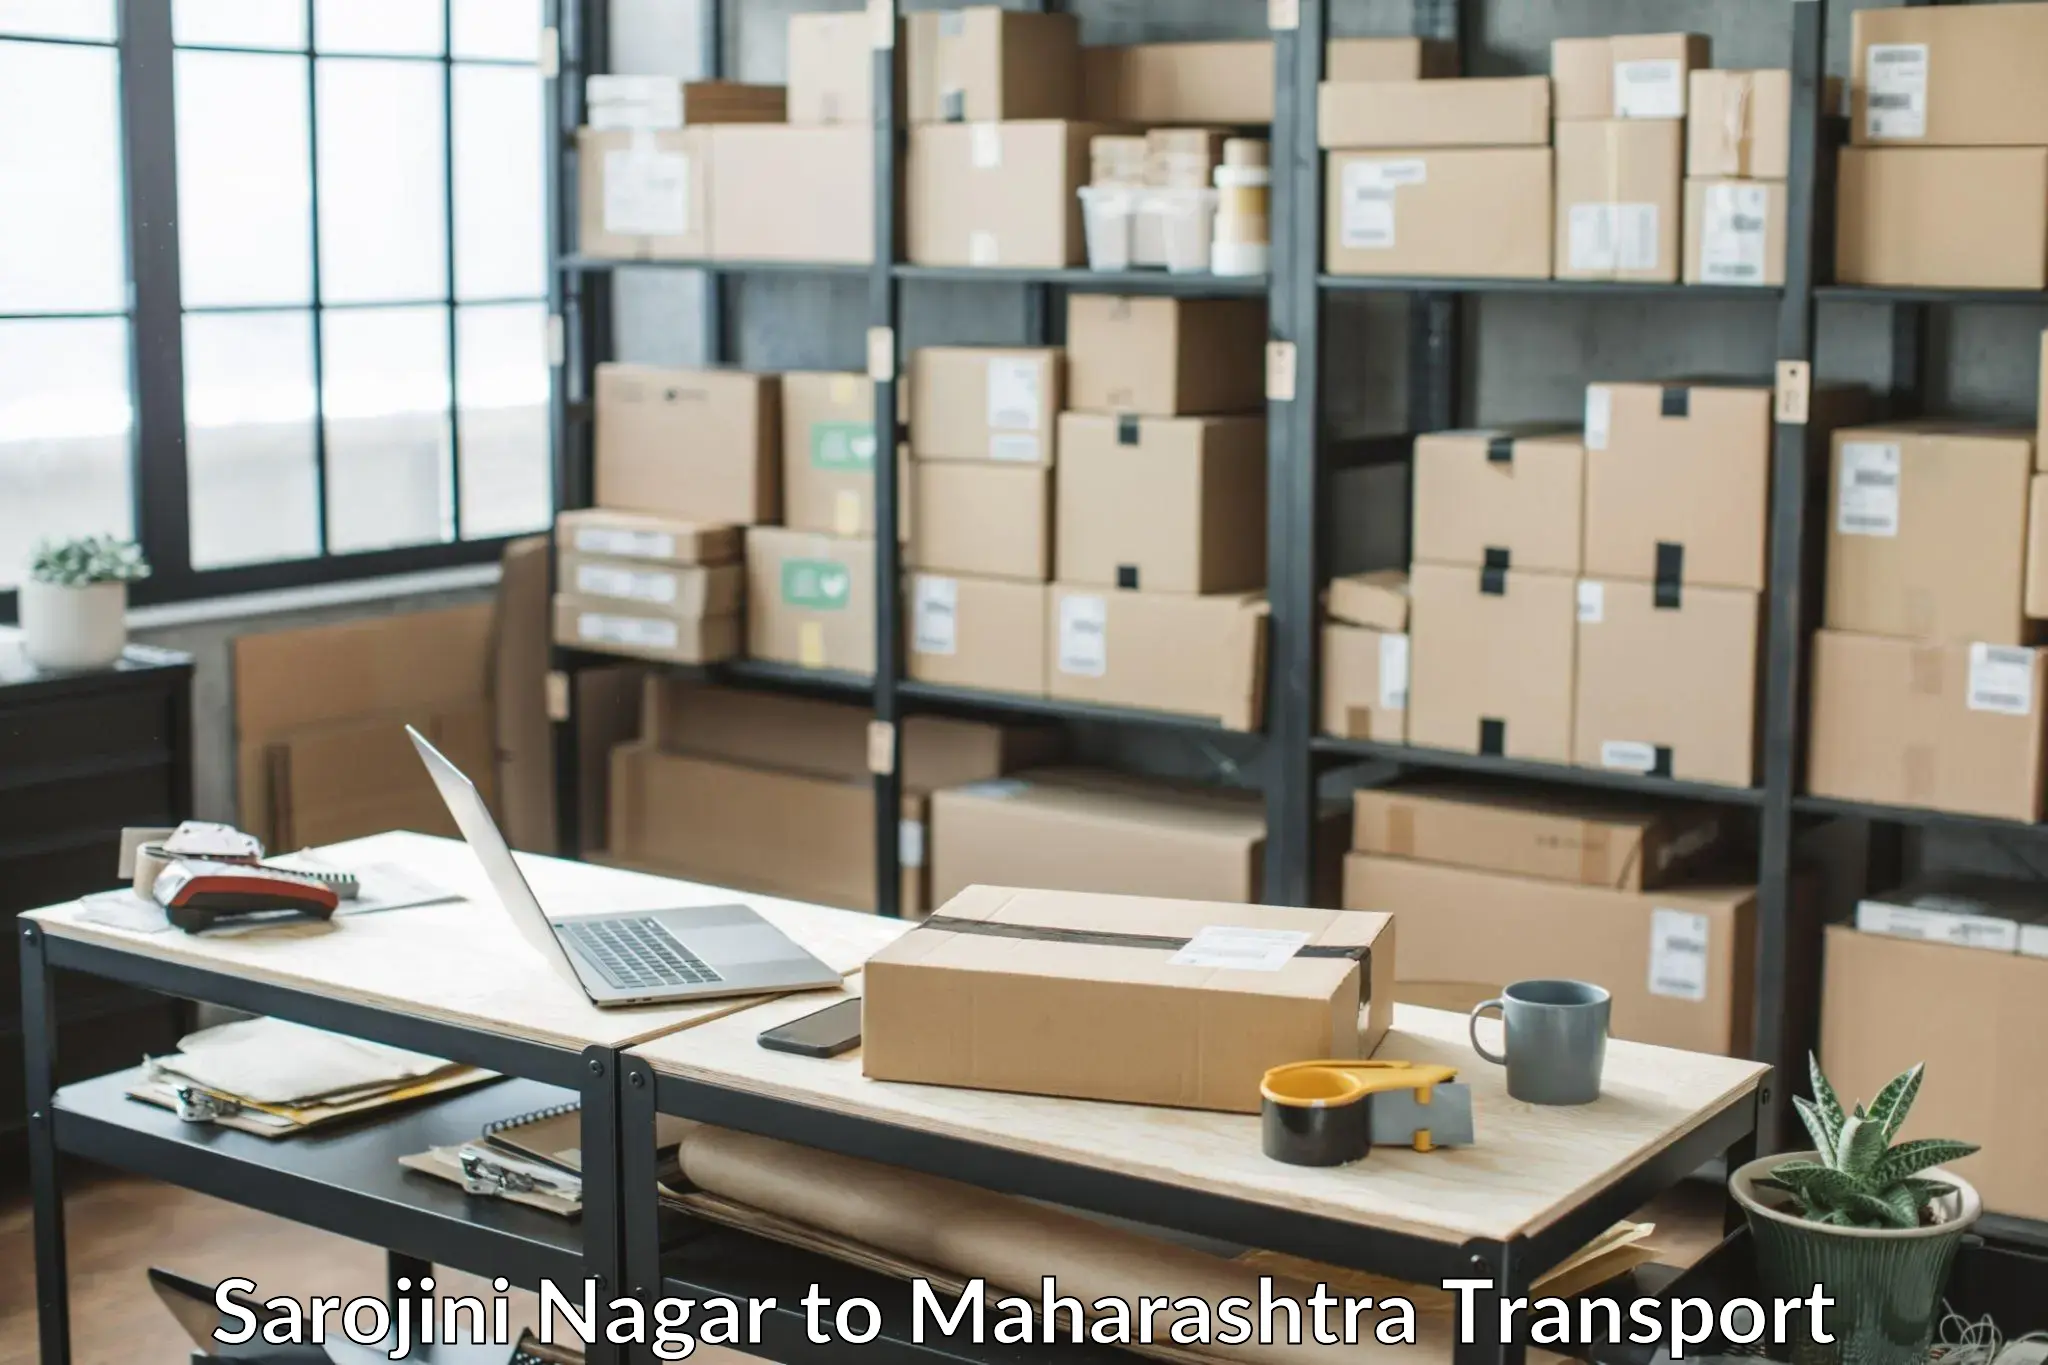 Goods delivery service Sarojini Nagar to Nandura